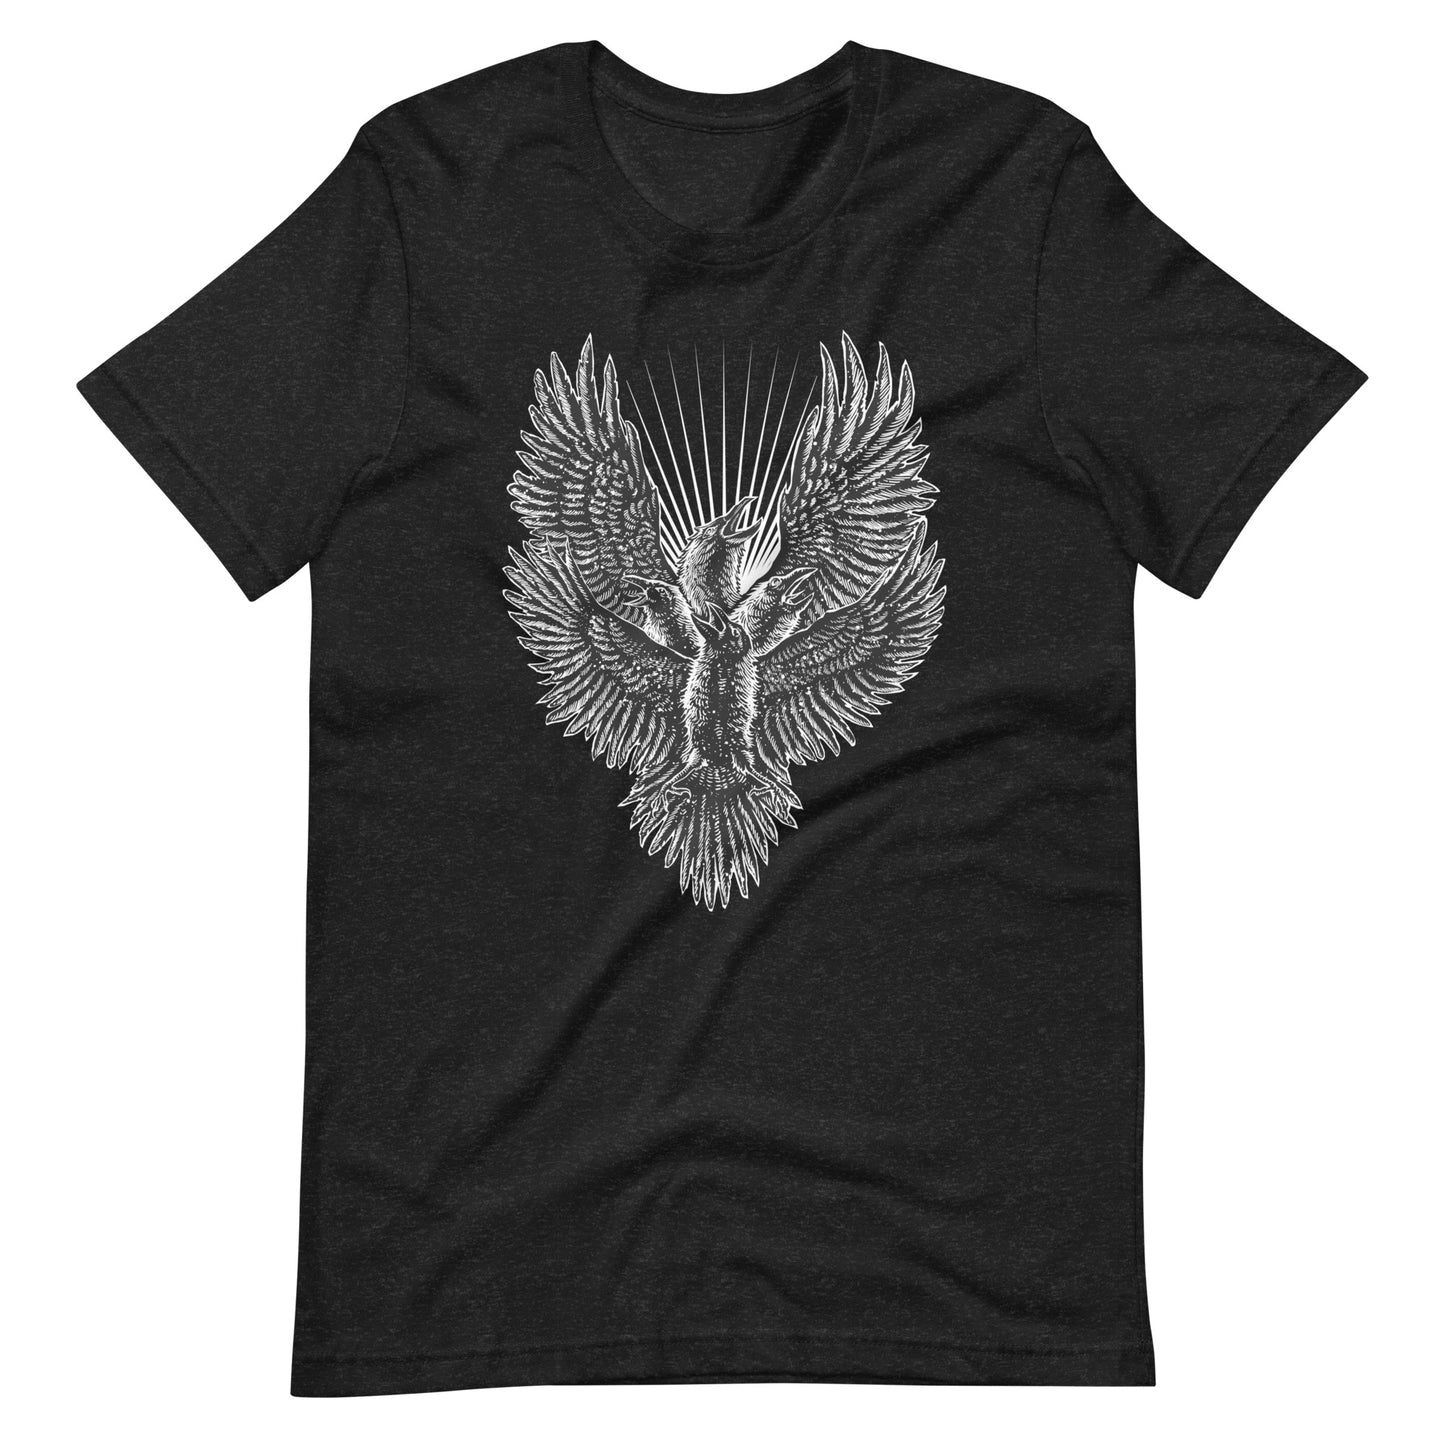 Luminous Crow - Men's t-shirt - Black Heather Front